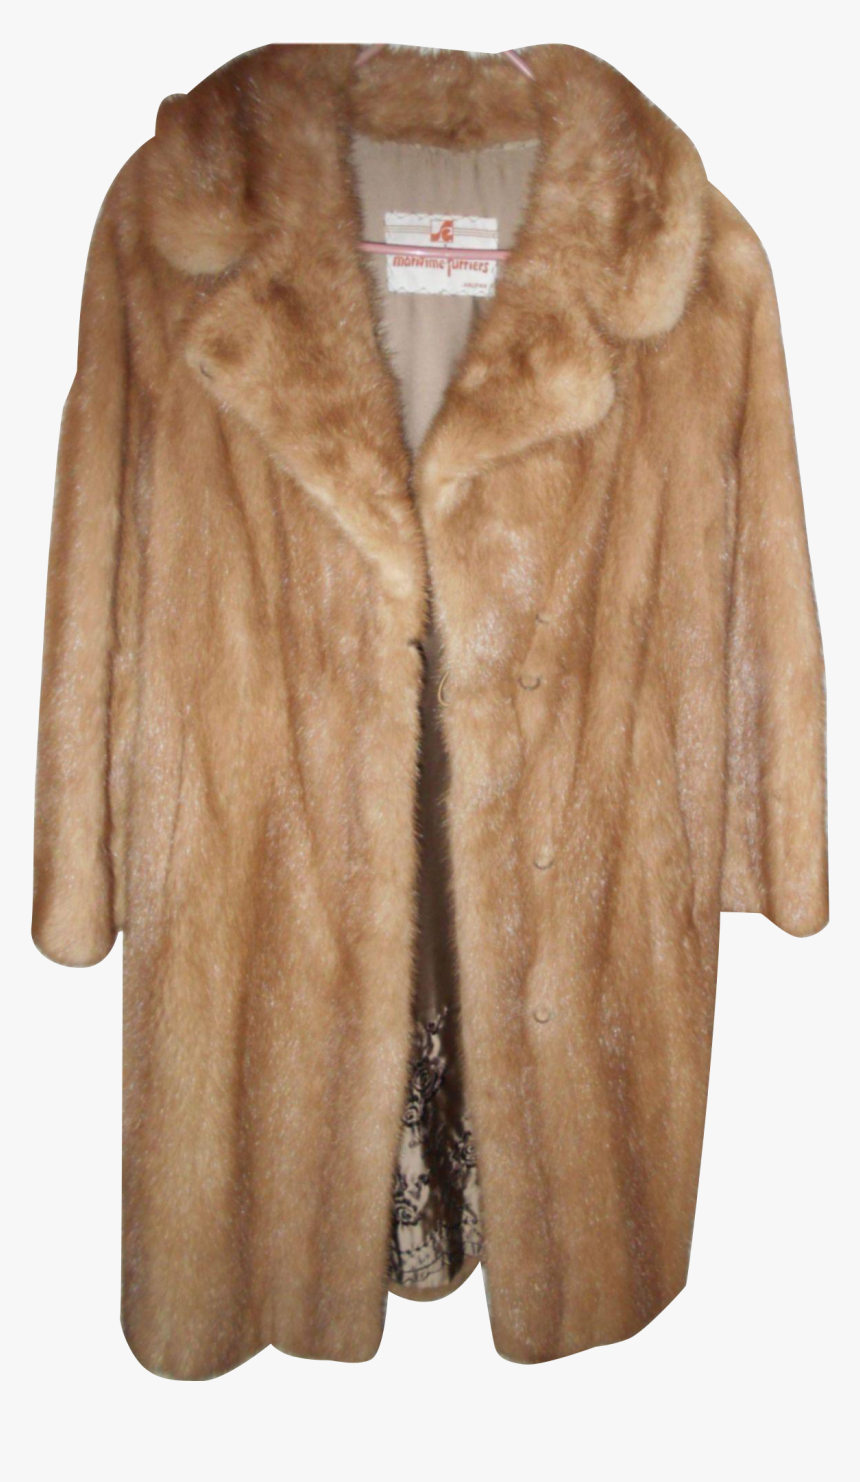 Fur Coat Png Image Background, Transparent Png, Free Download